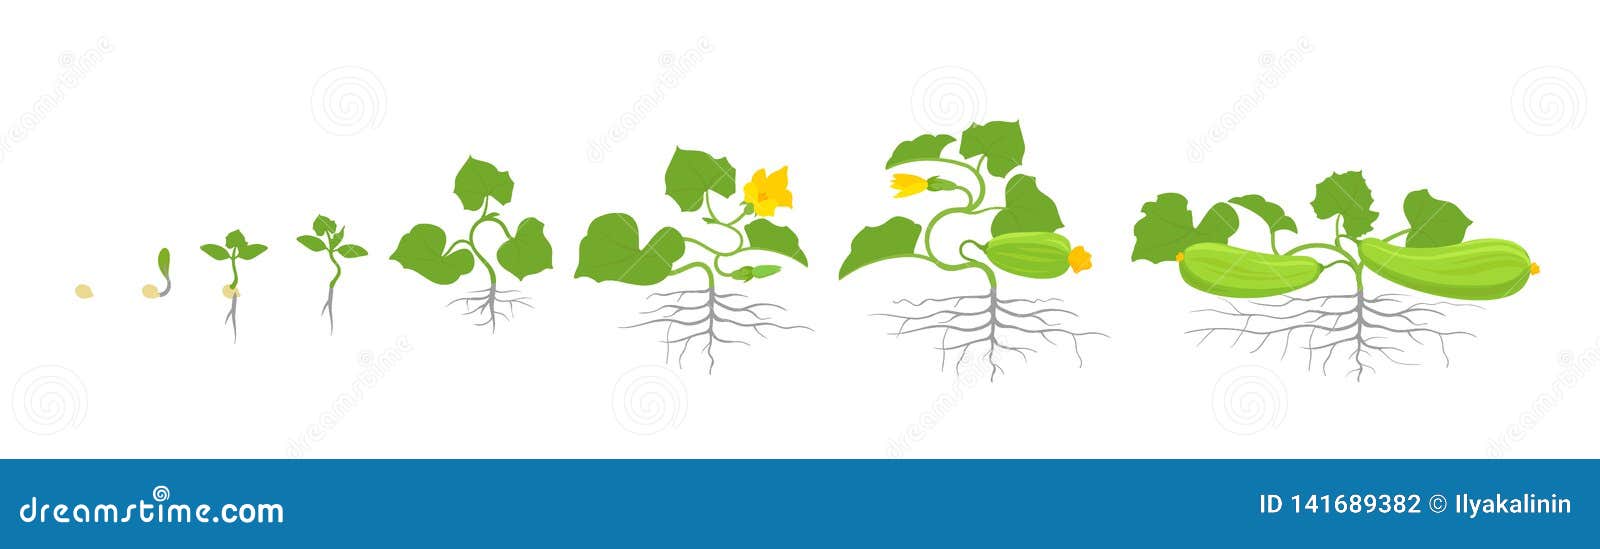 Zucchini -Wachstumsstufen: Wie schnell wächst Zucchini?